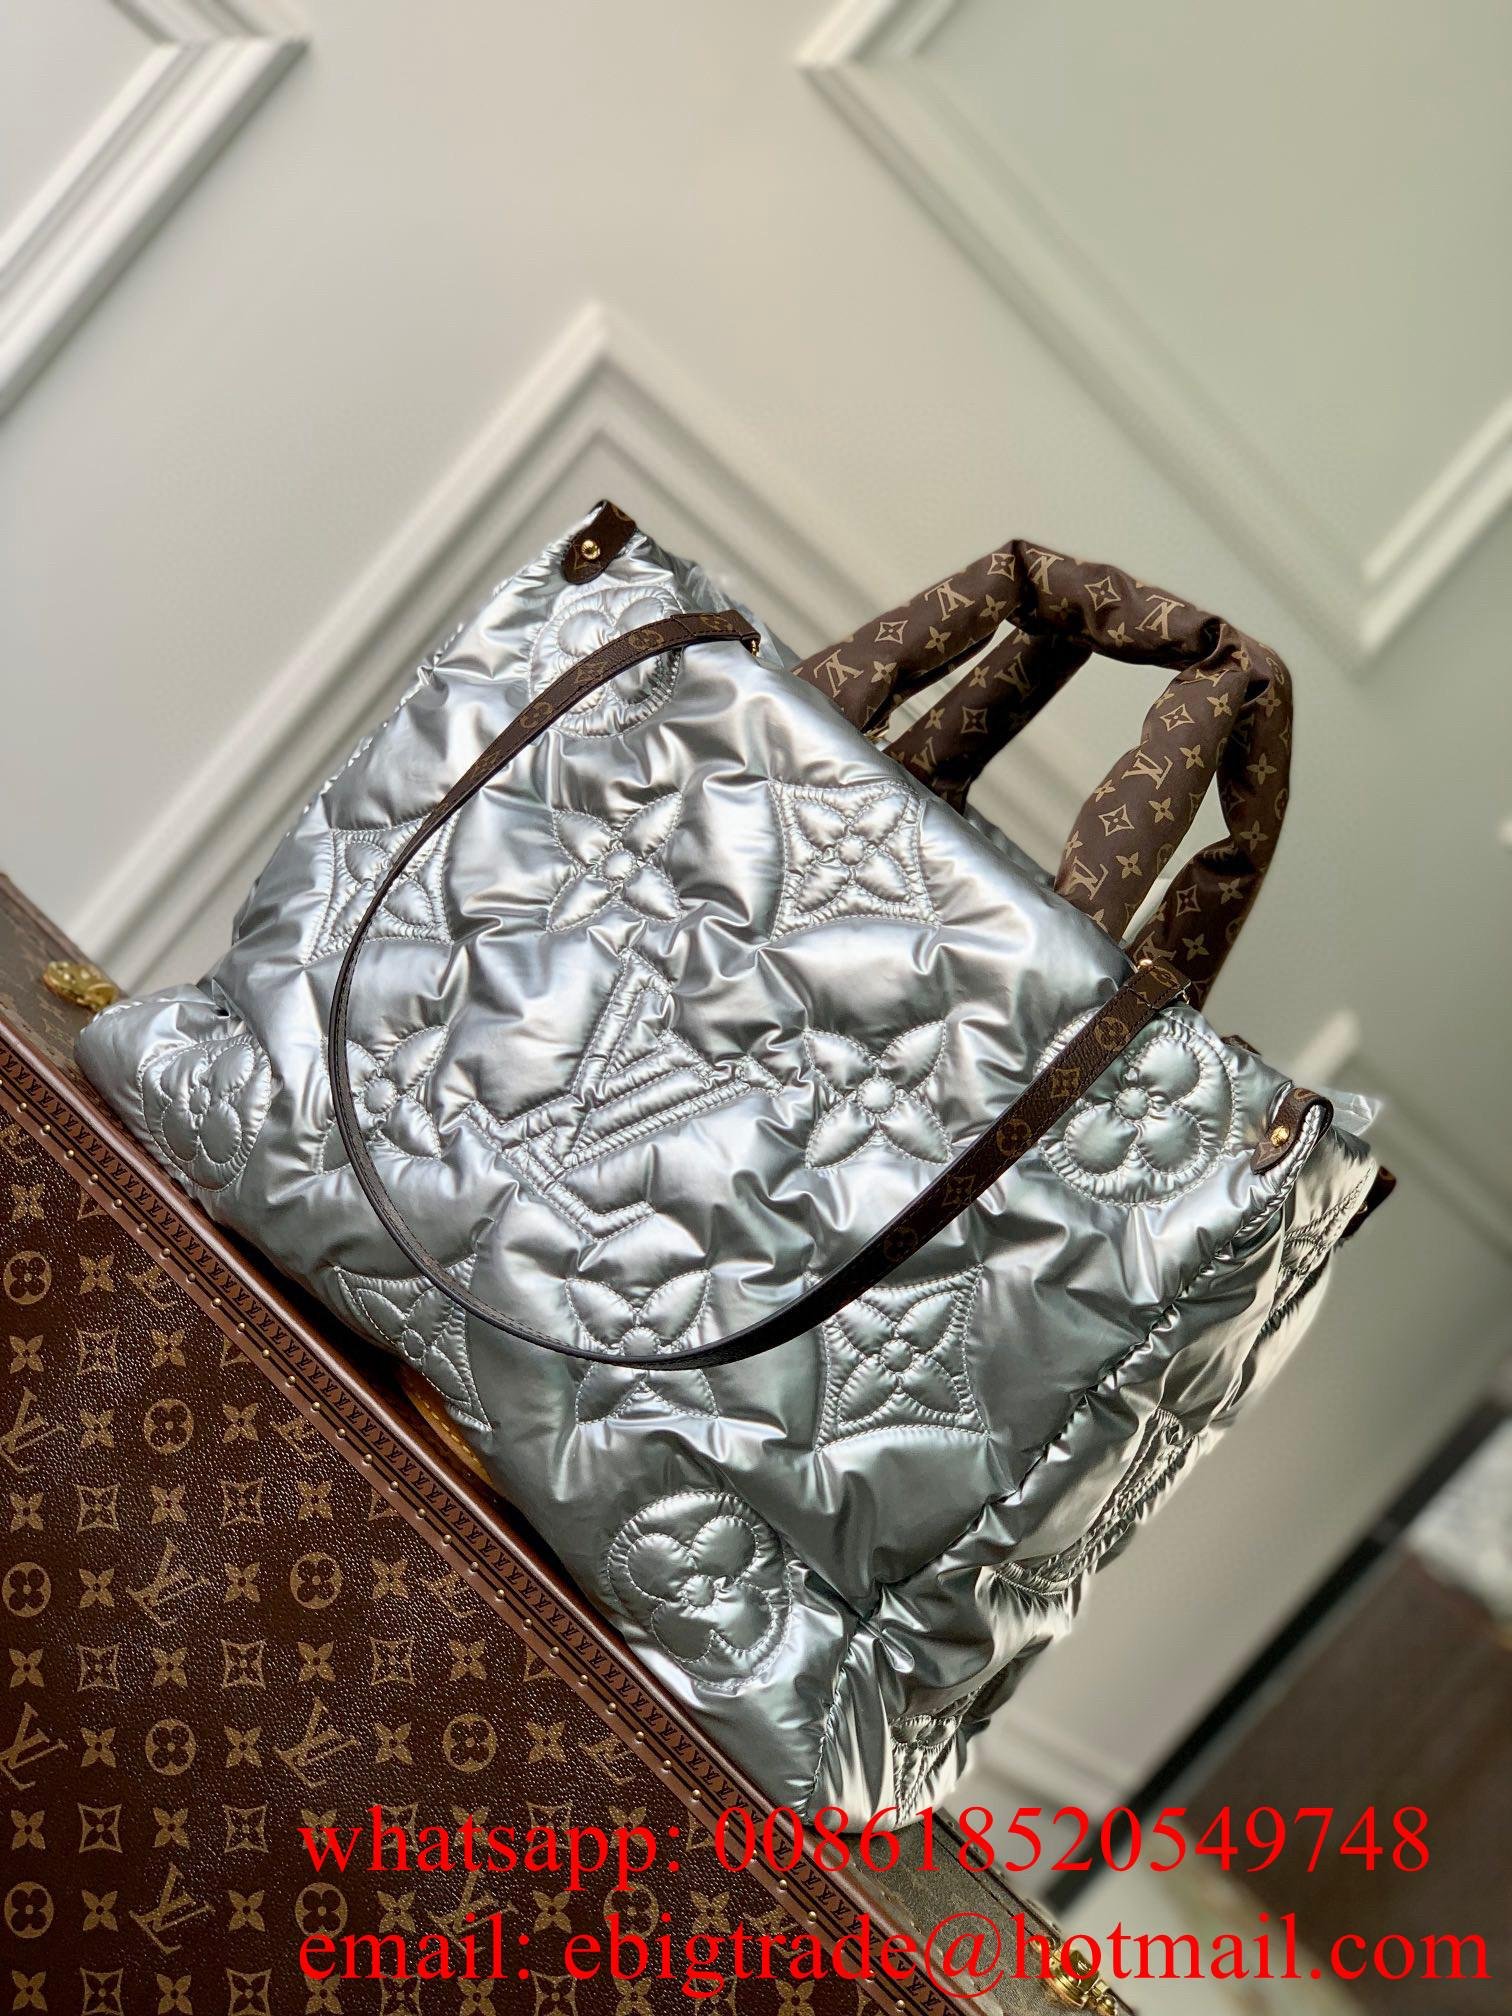     KI-look bag Wholesaler     andbags Cheap               handbags     ag woman 5